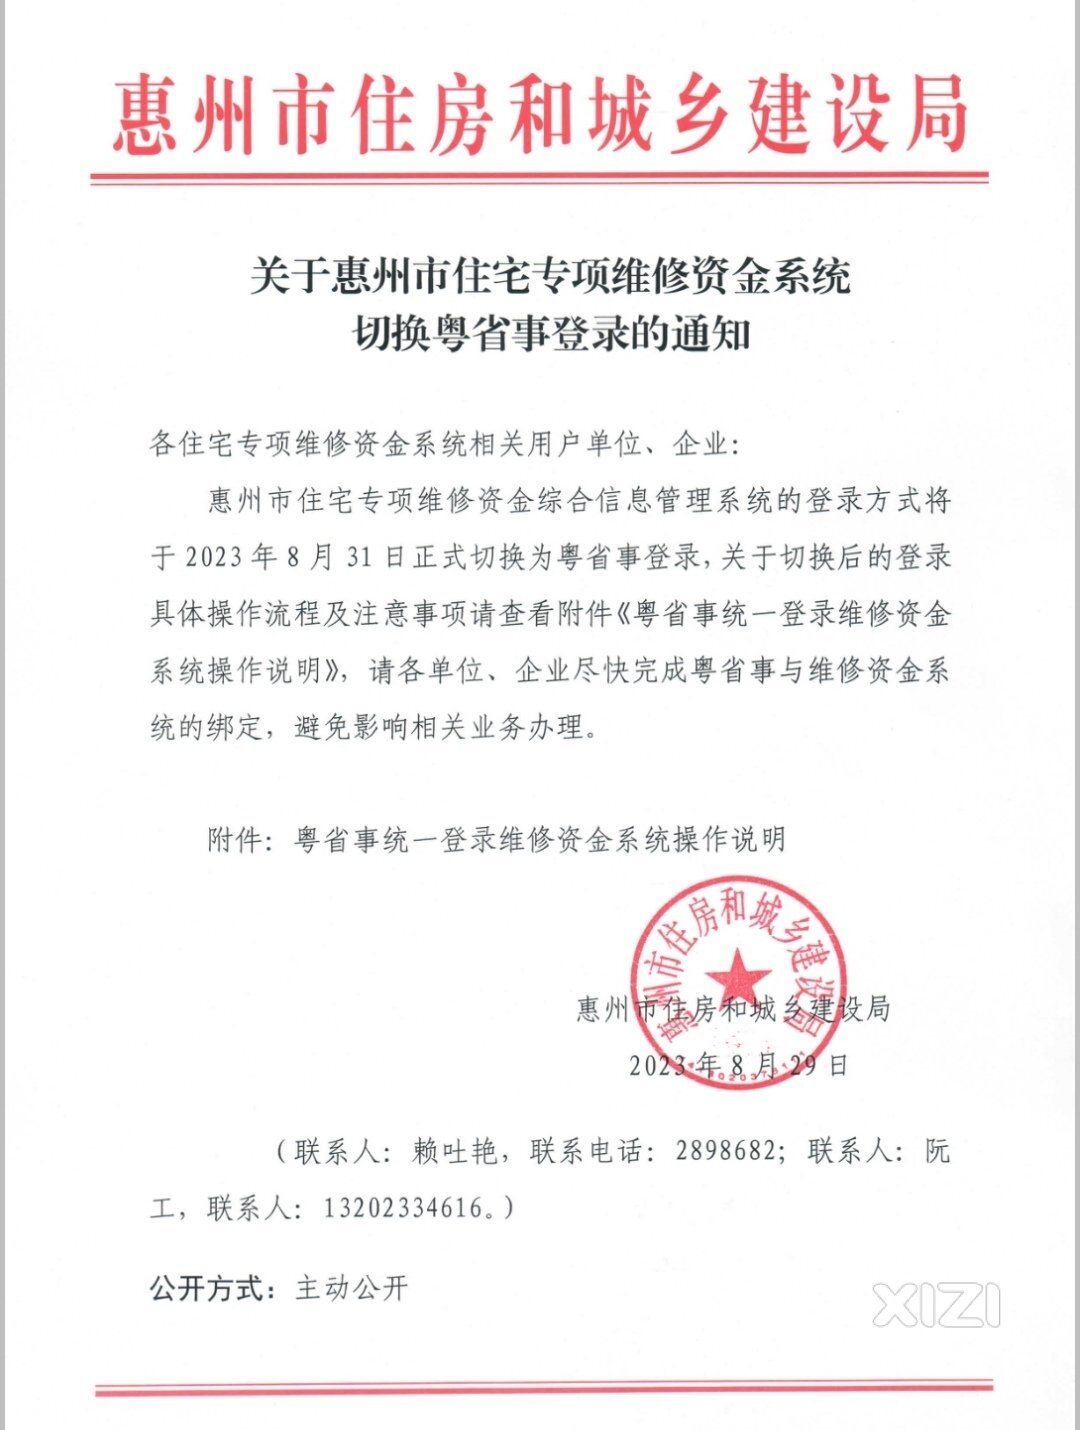 惠州市住宅专项维修资金系统自8月31日切换粤省事登录